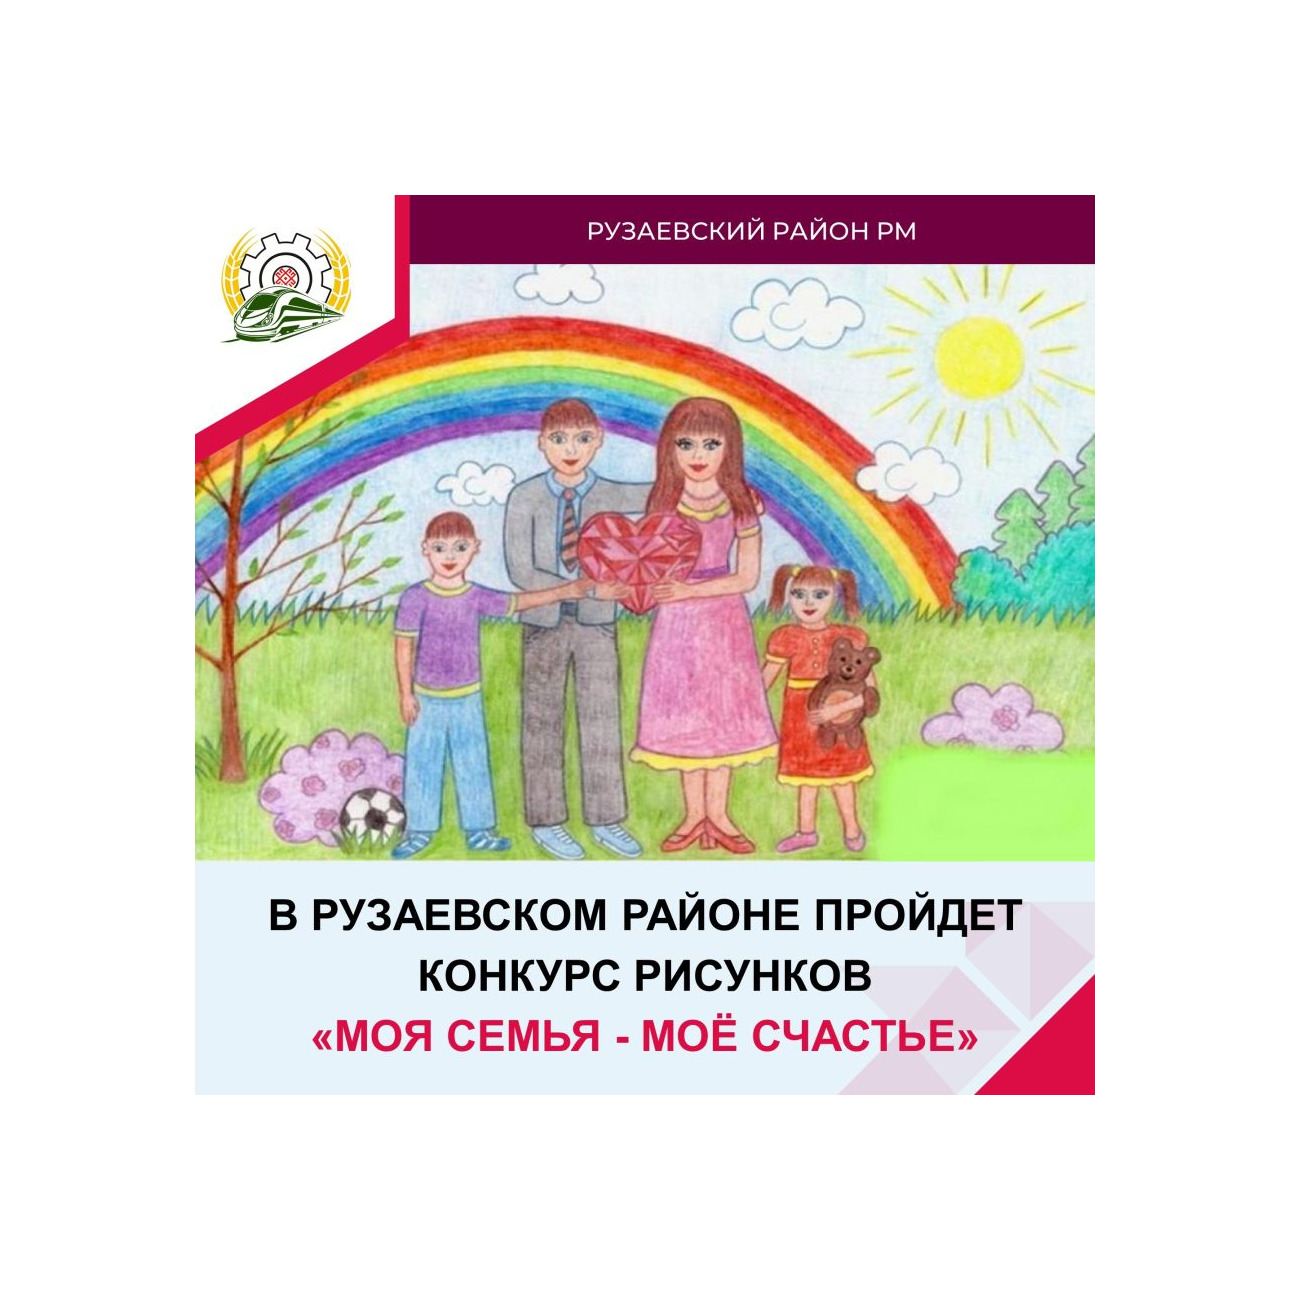 В Рузаевском районе пройдет конкурс рисунков «Моя семья - моё счастье».